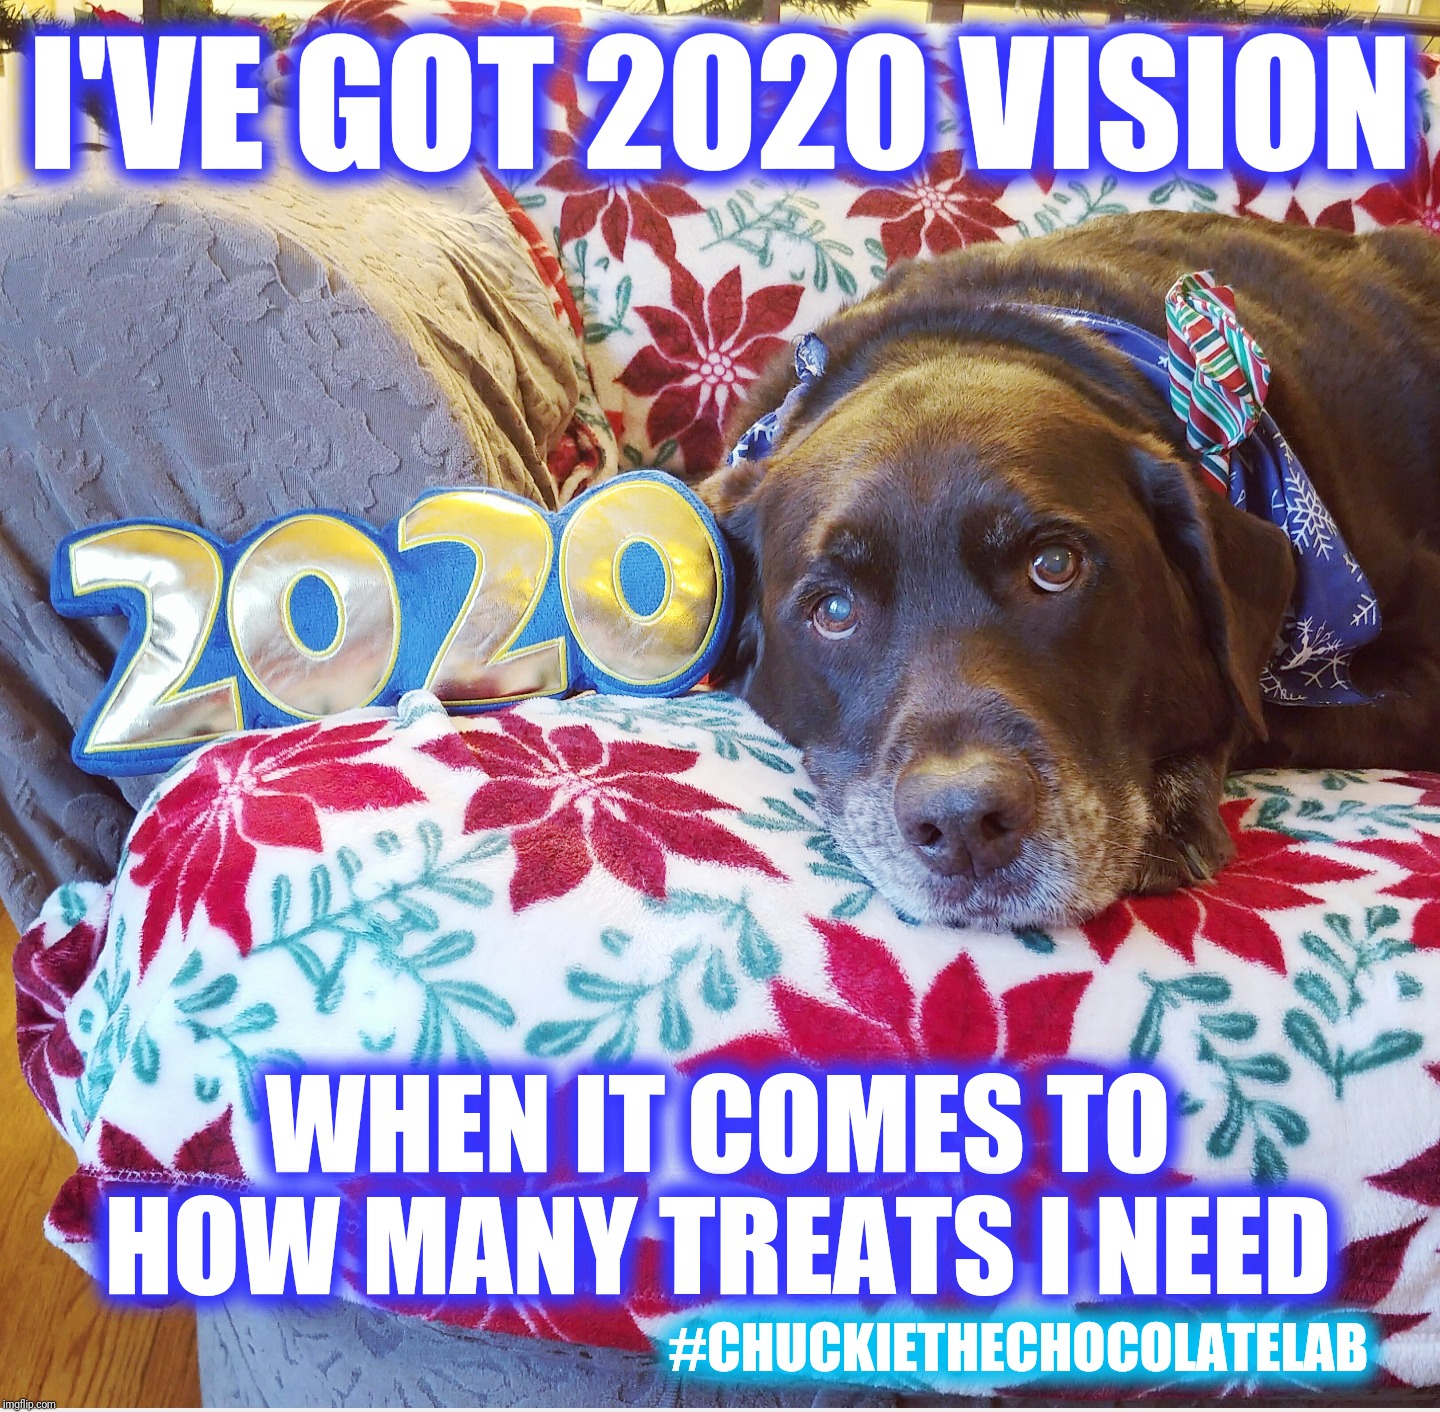 2020 vision meme